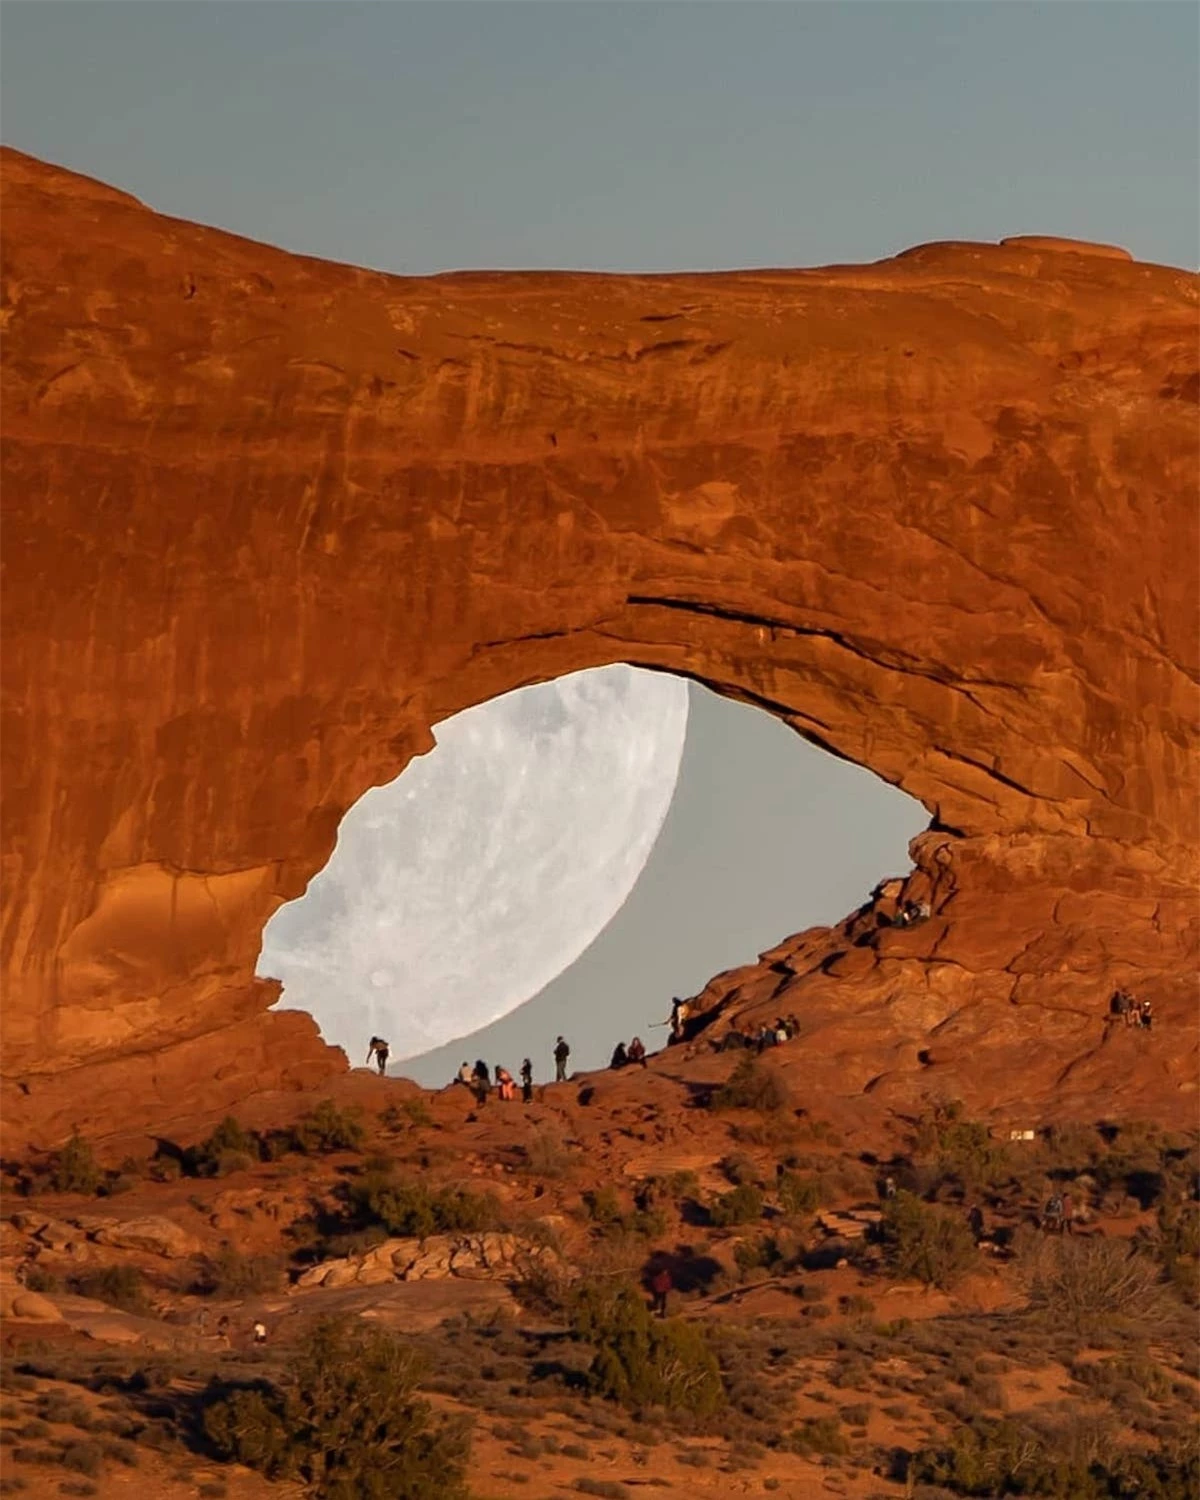 Hình ảnh siêu thực về mặt trăng khổng lồ trong sa mạc - Ảnh 2.